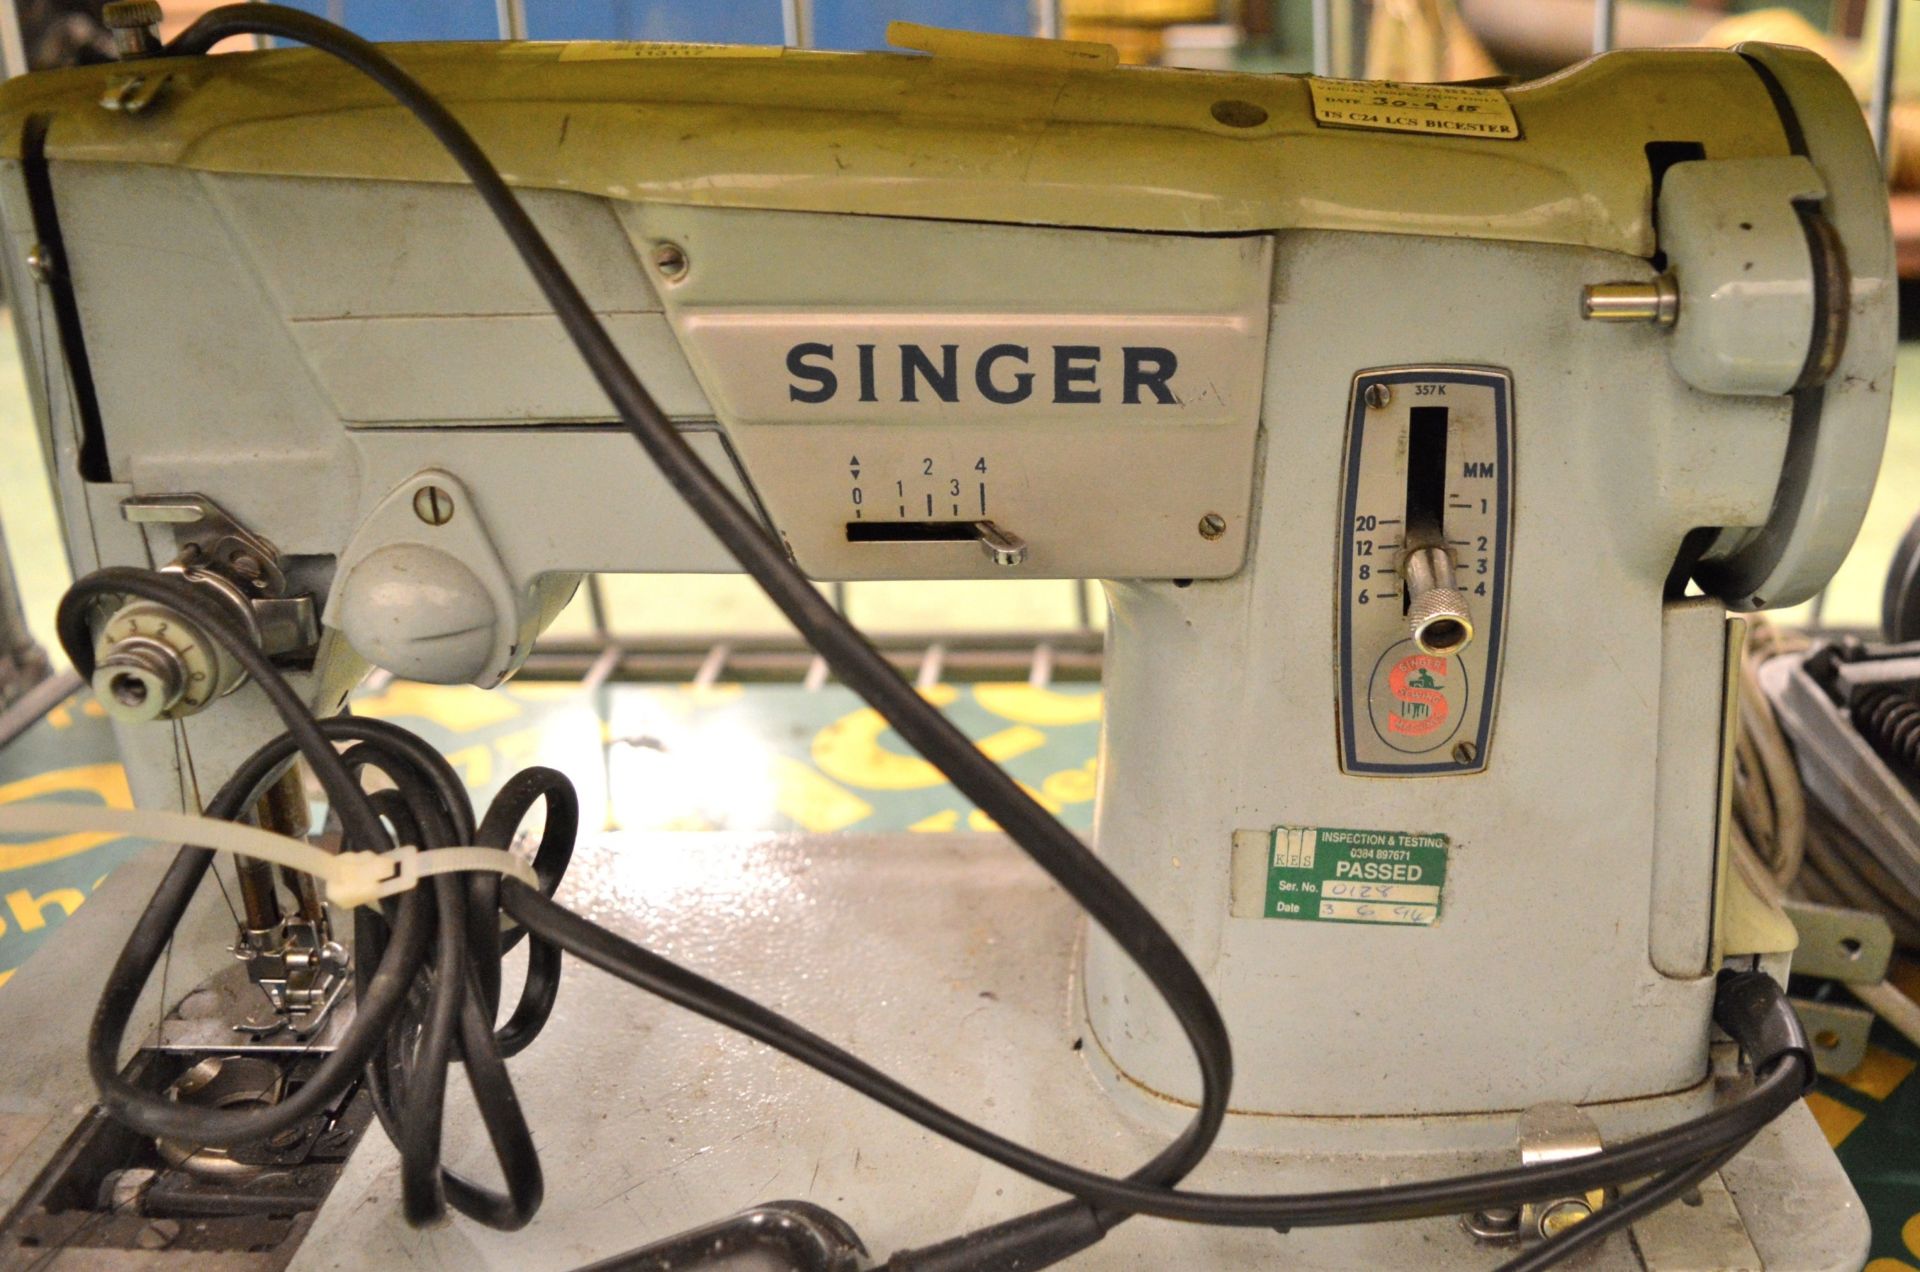 Singer Sewing Machine. - Image 2 of 2